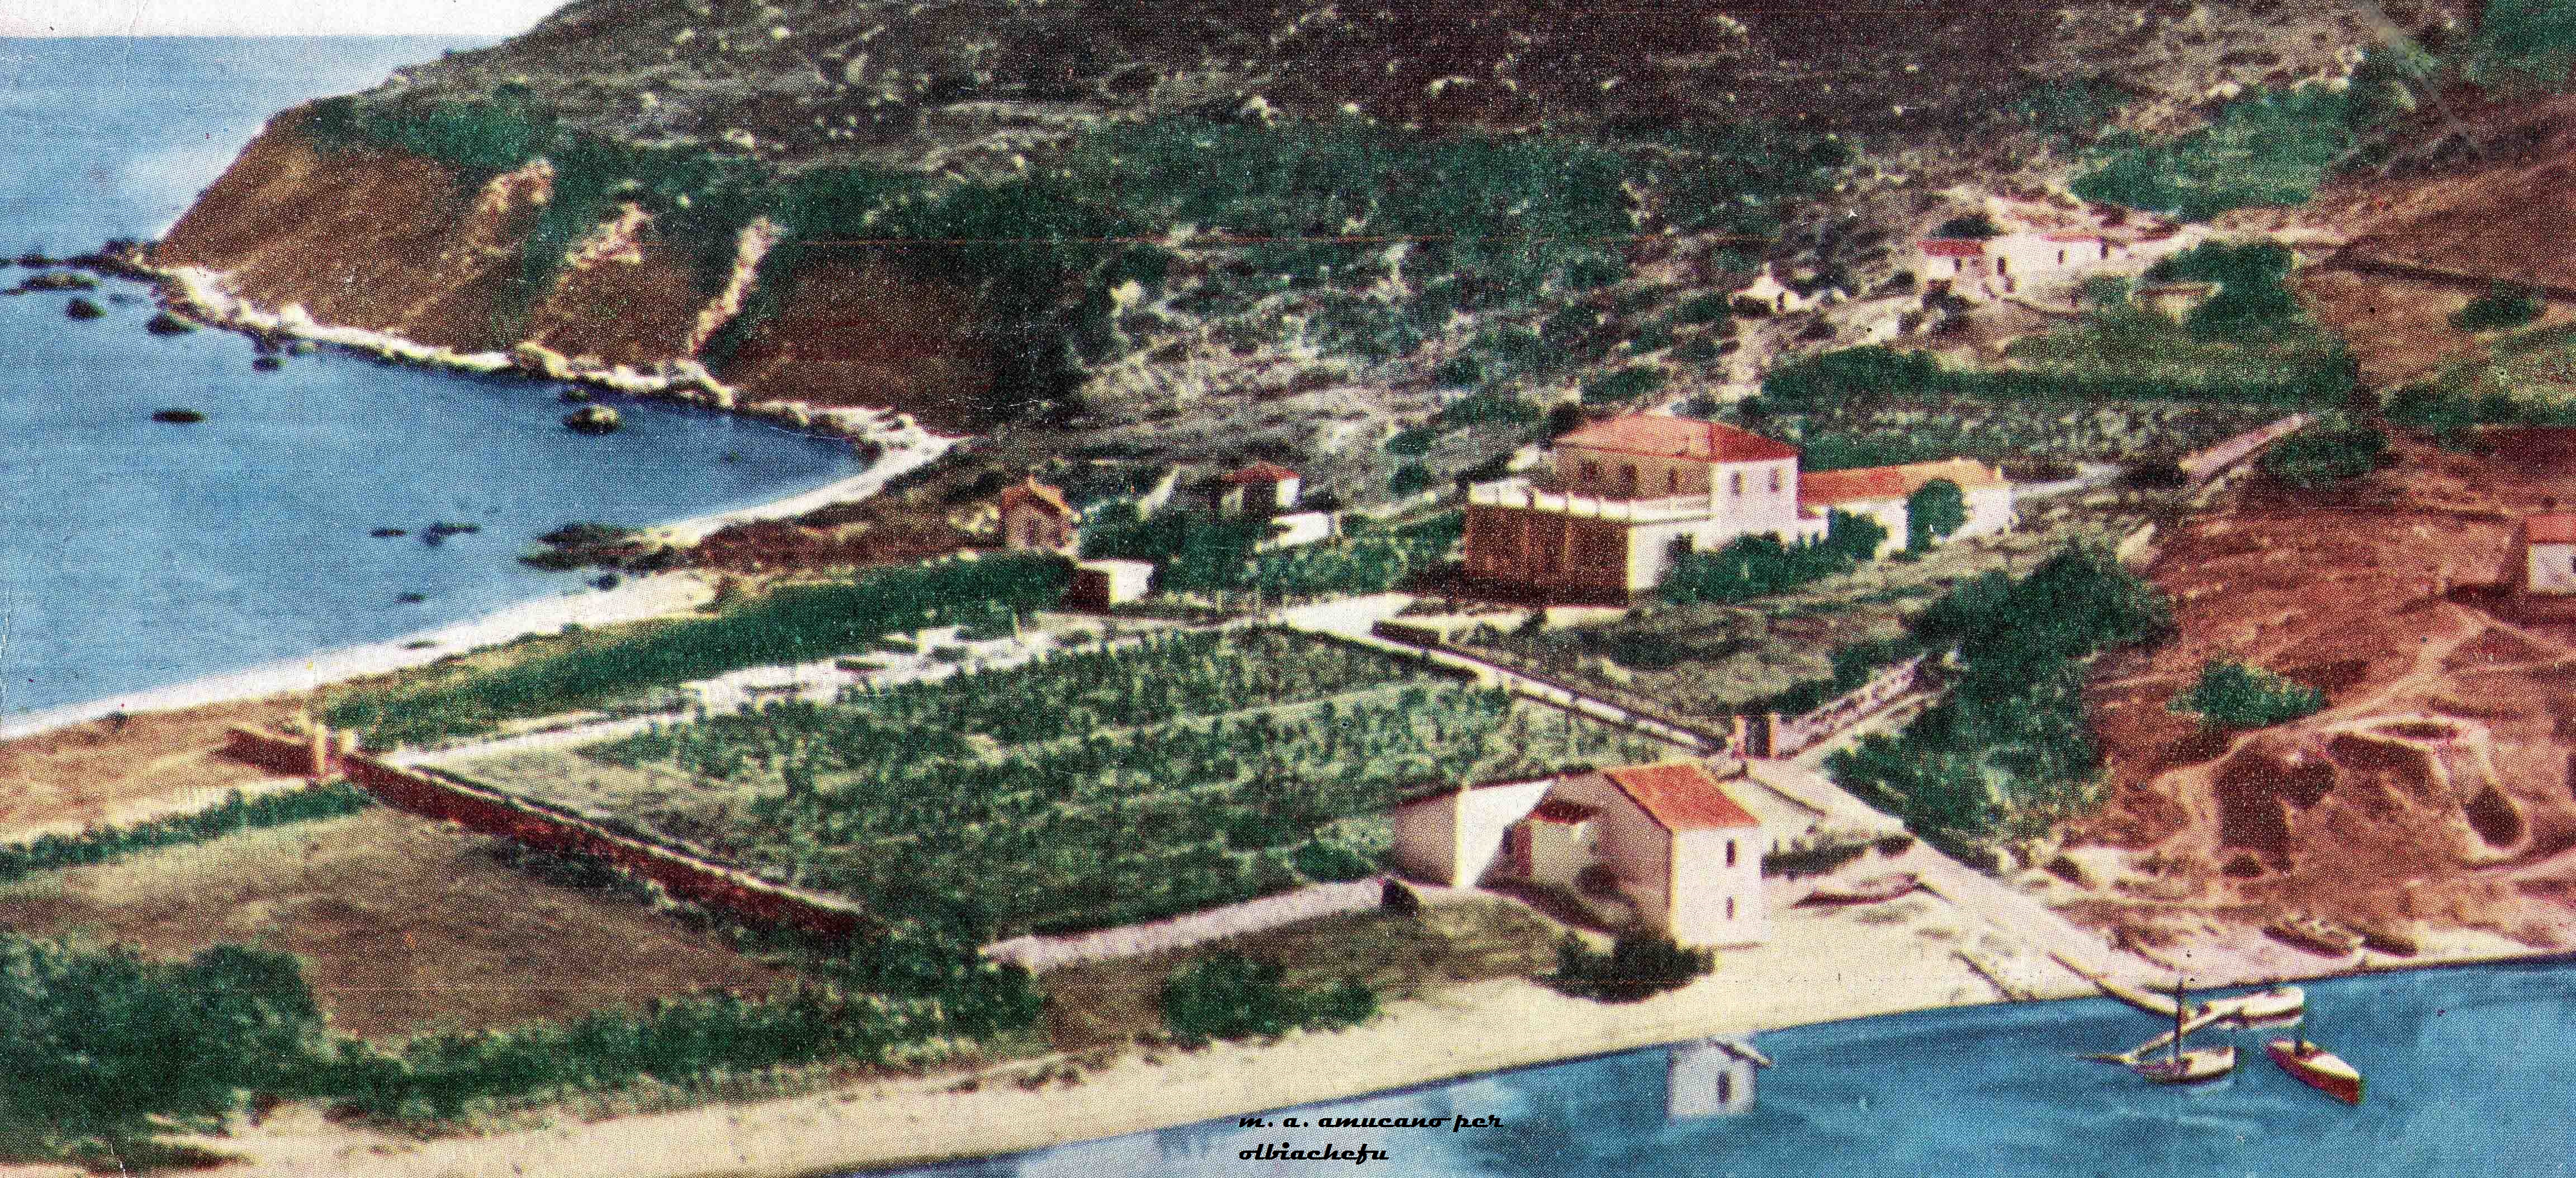 Gli orti di Tavolara in una cartolina datata nel 1946